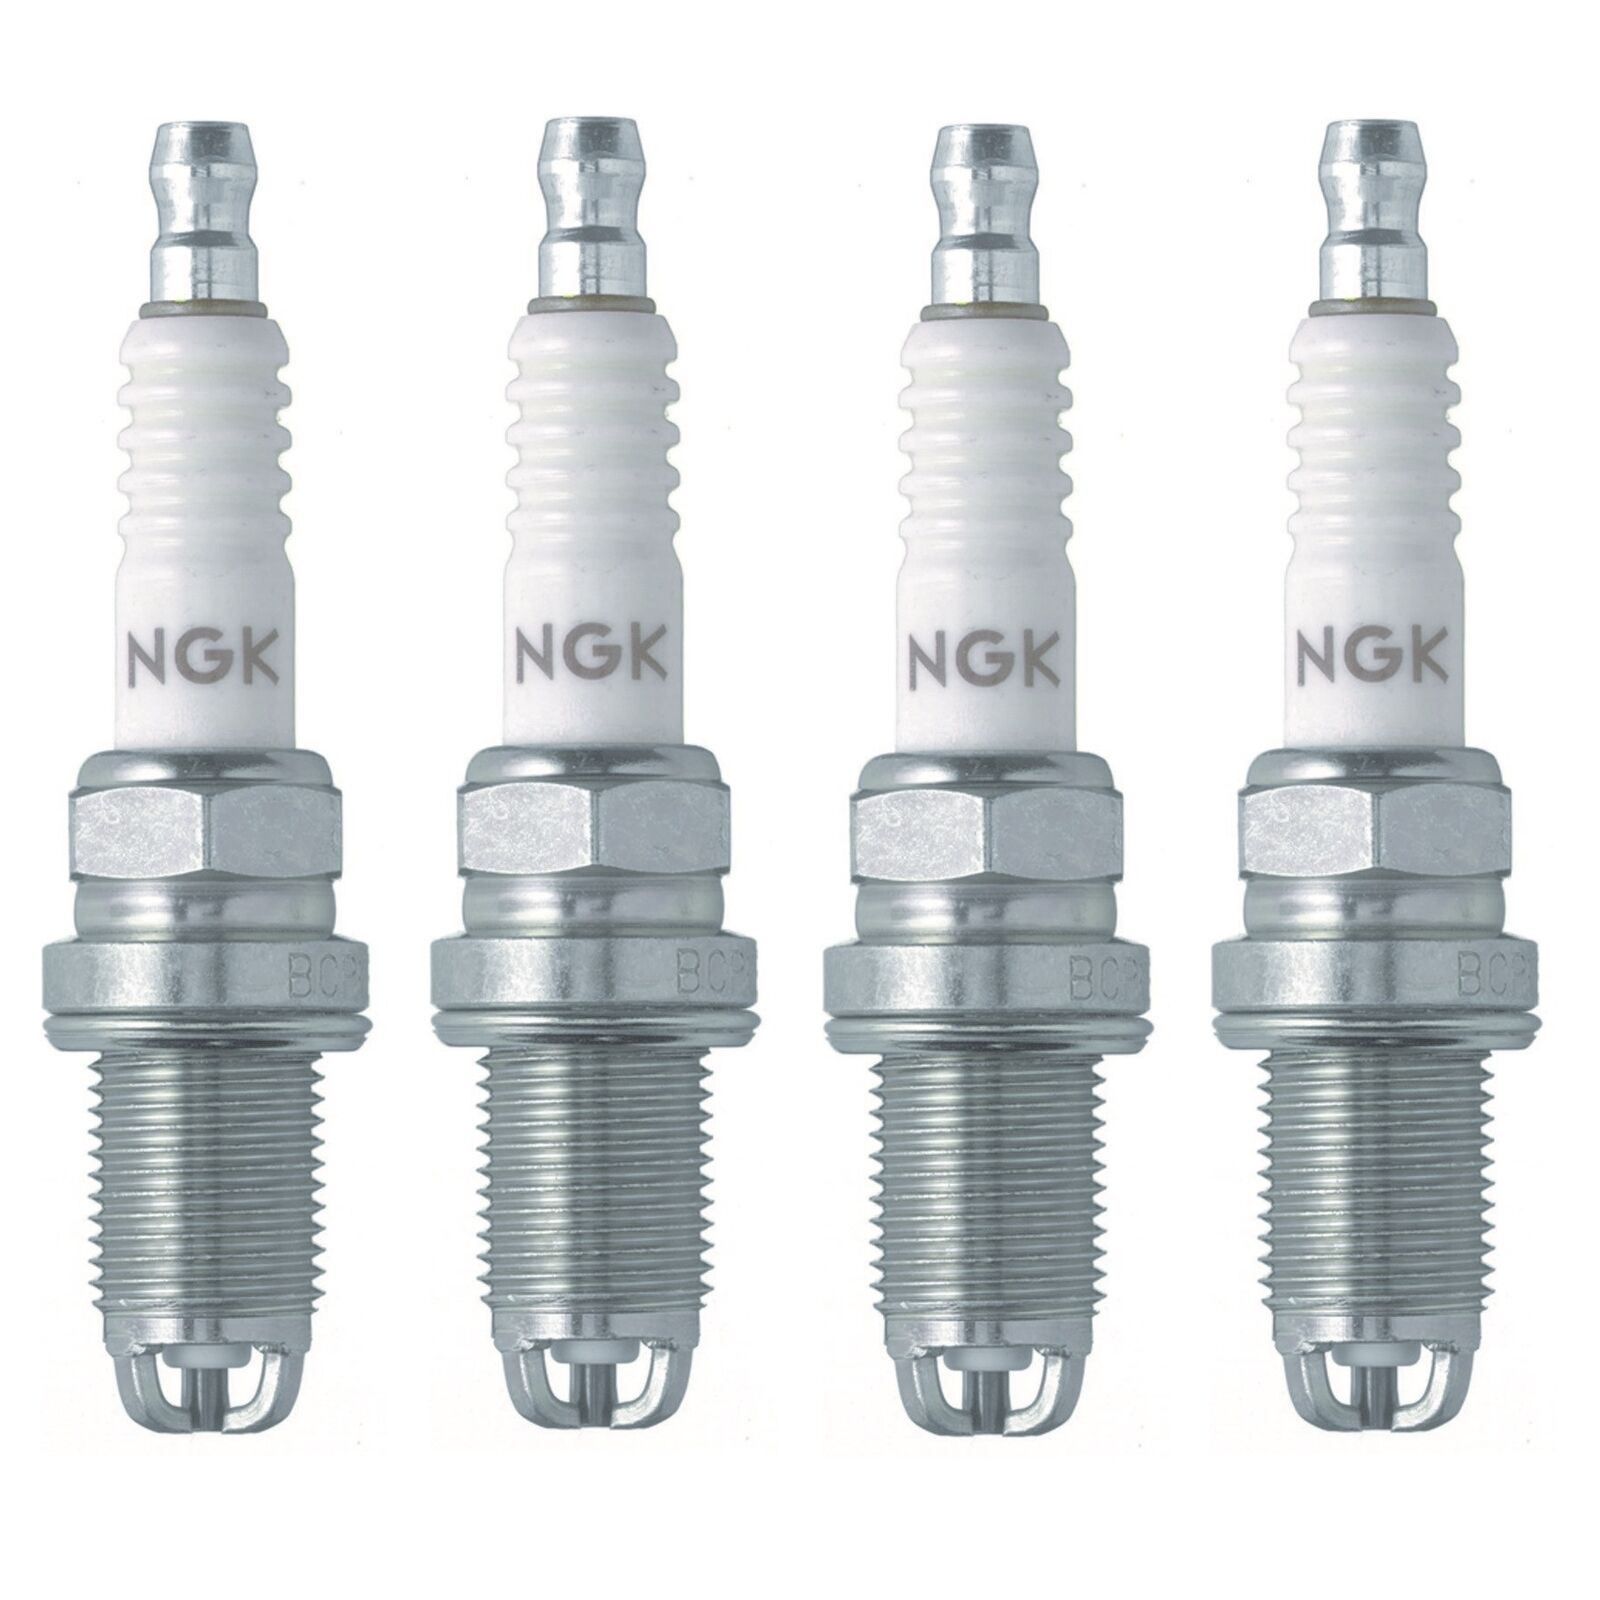 NGK Standard Nickel Set of 4 Spark Plugs 0.028 For Peugeot 405 1.9L L4 DOHC